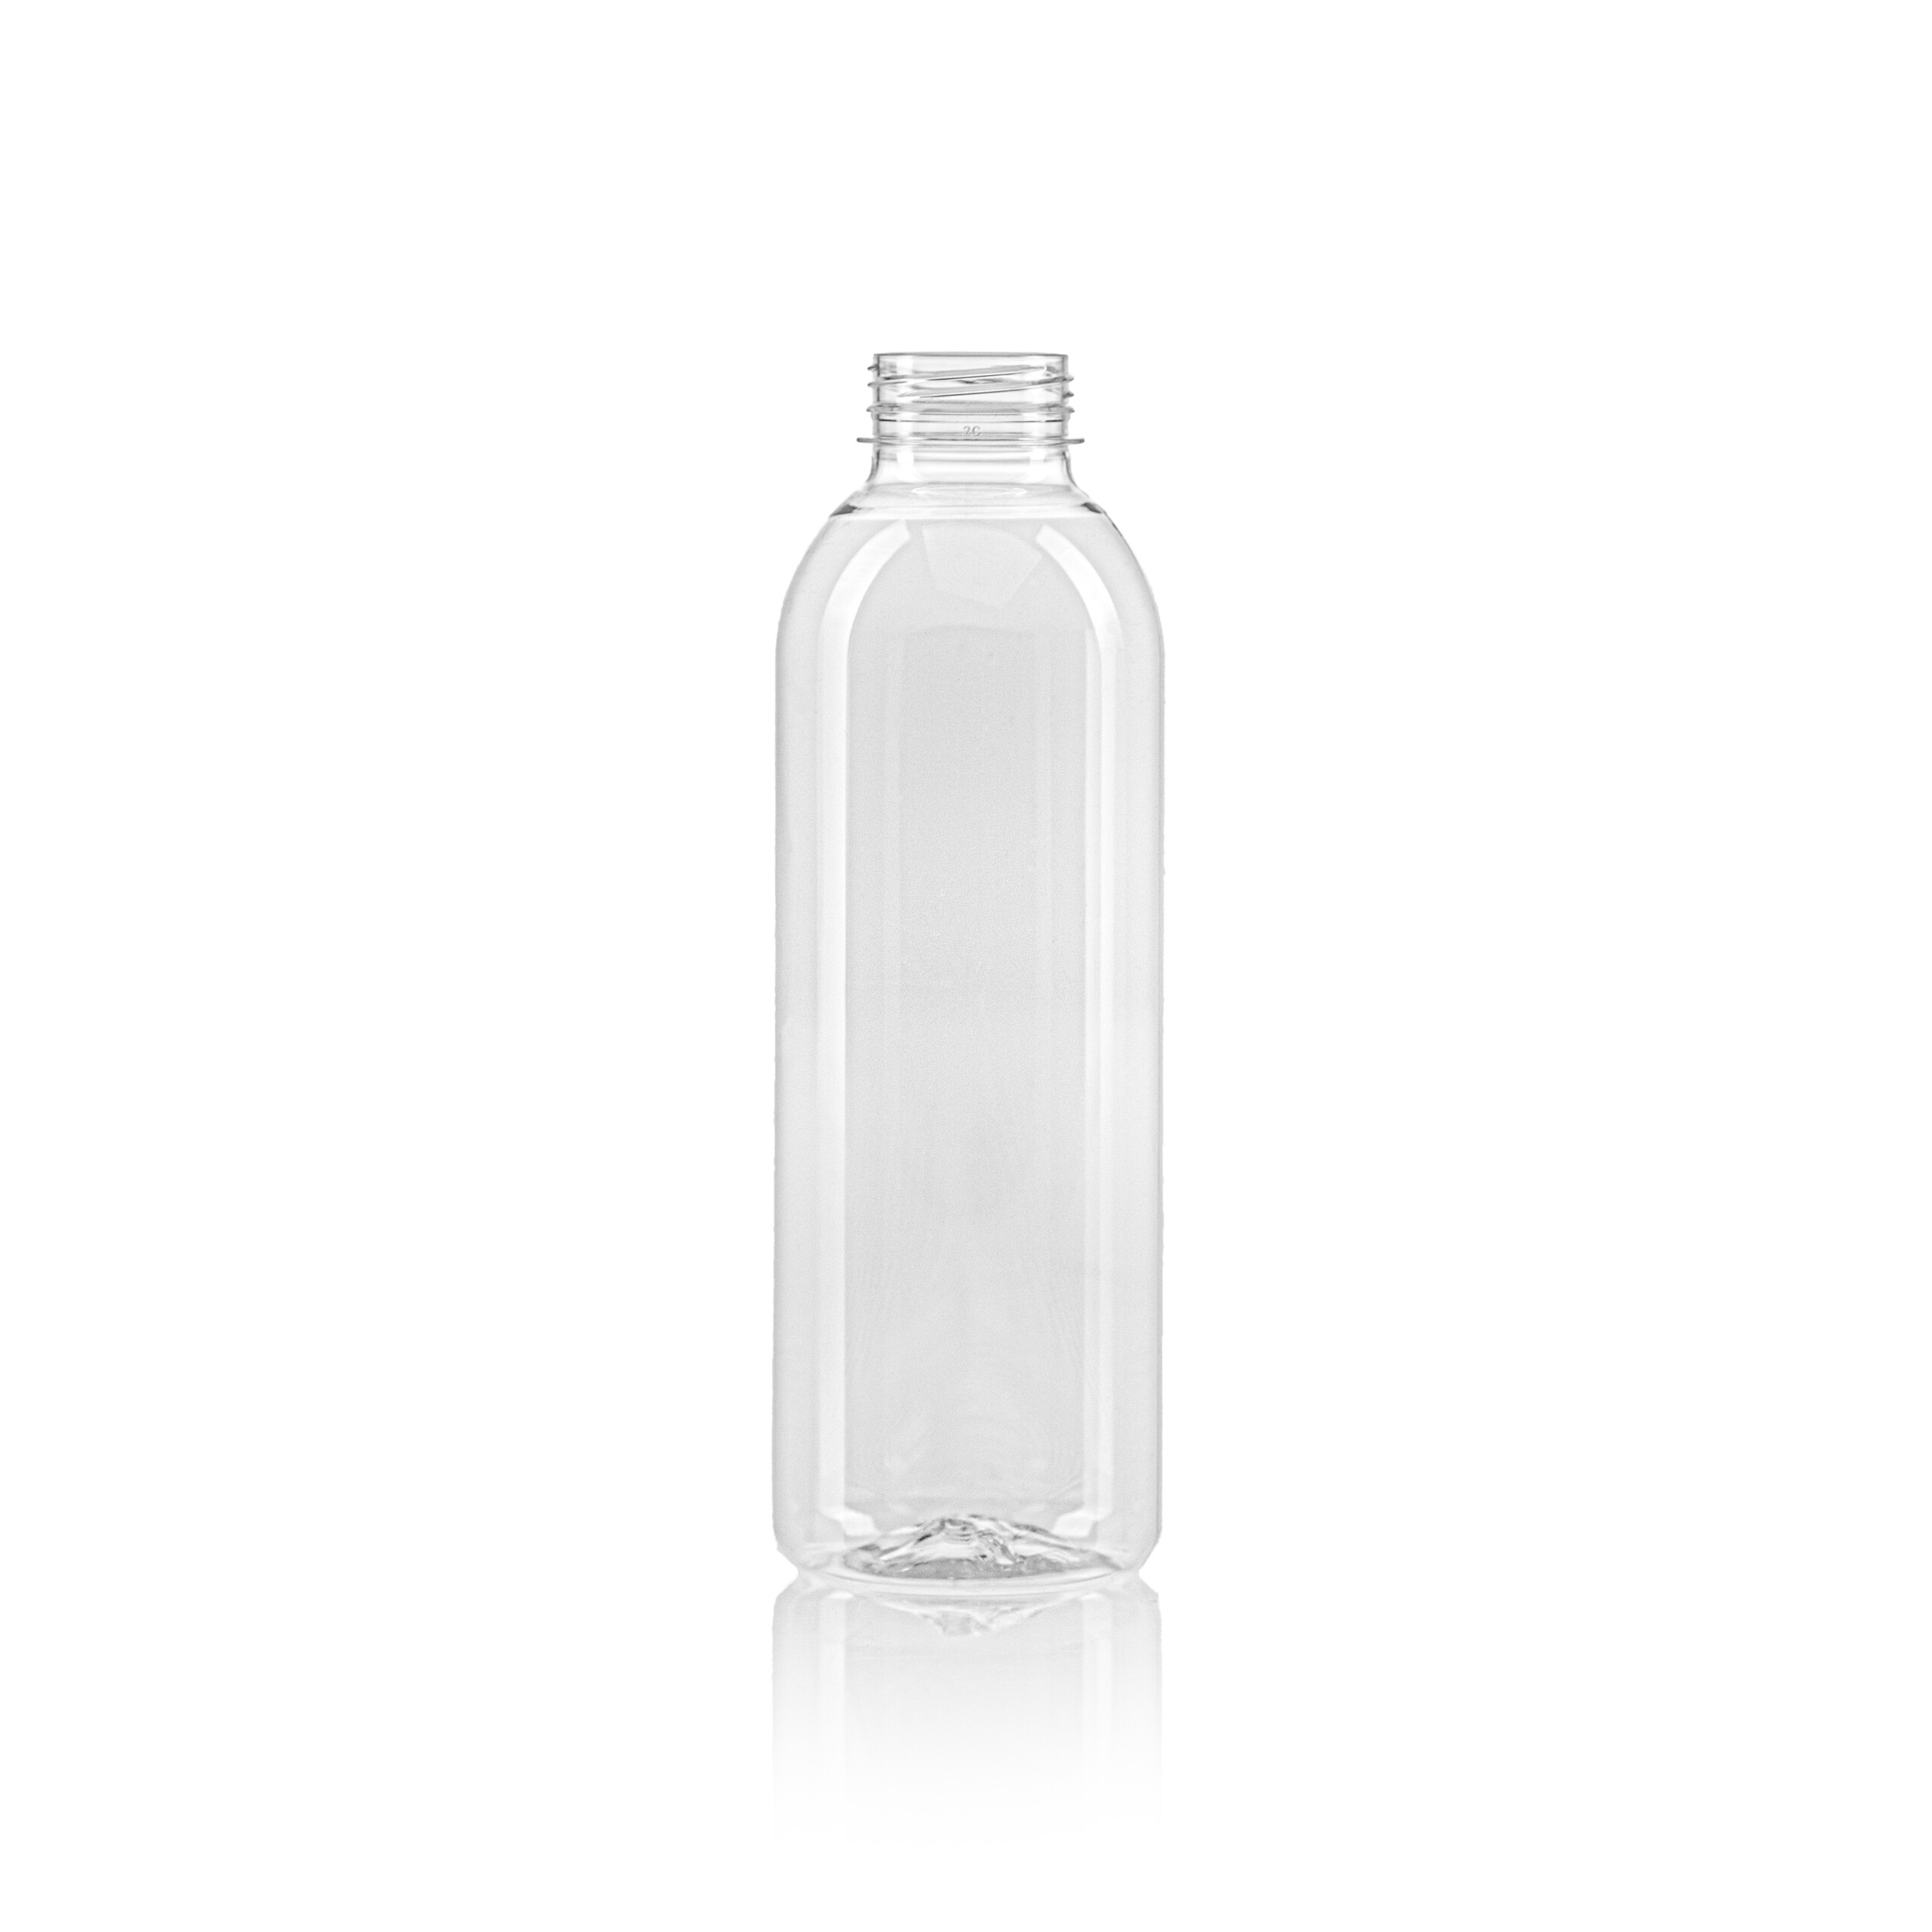 PET juice bottle round 750ml scaled 750